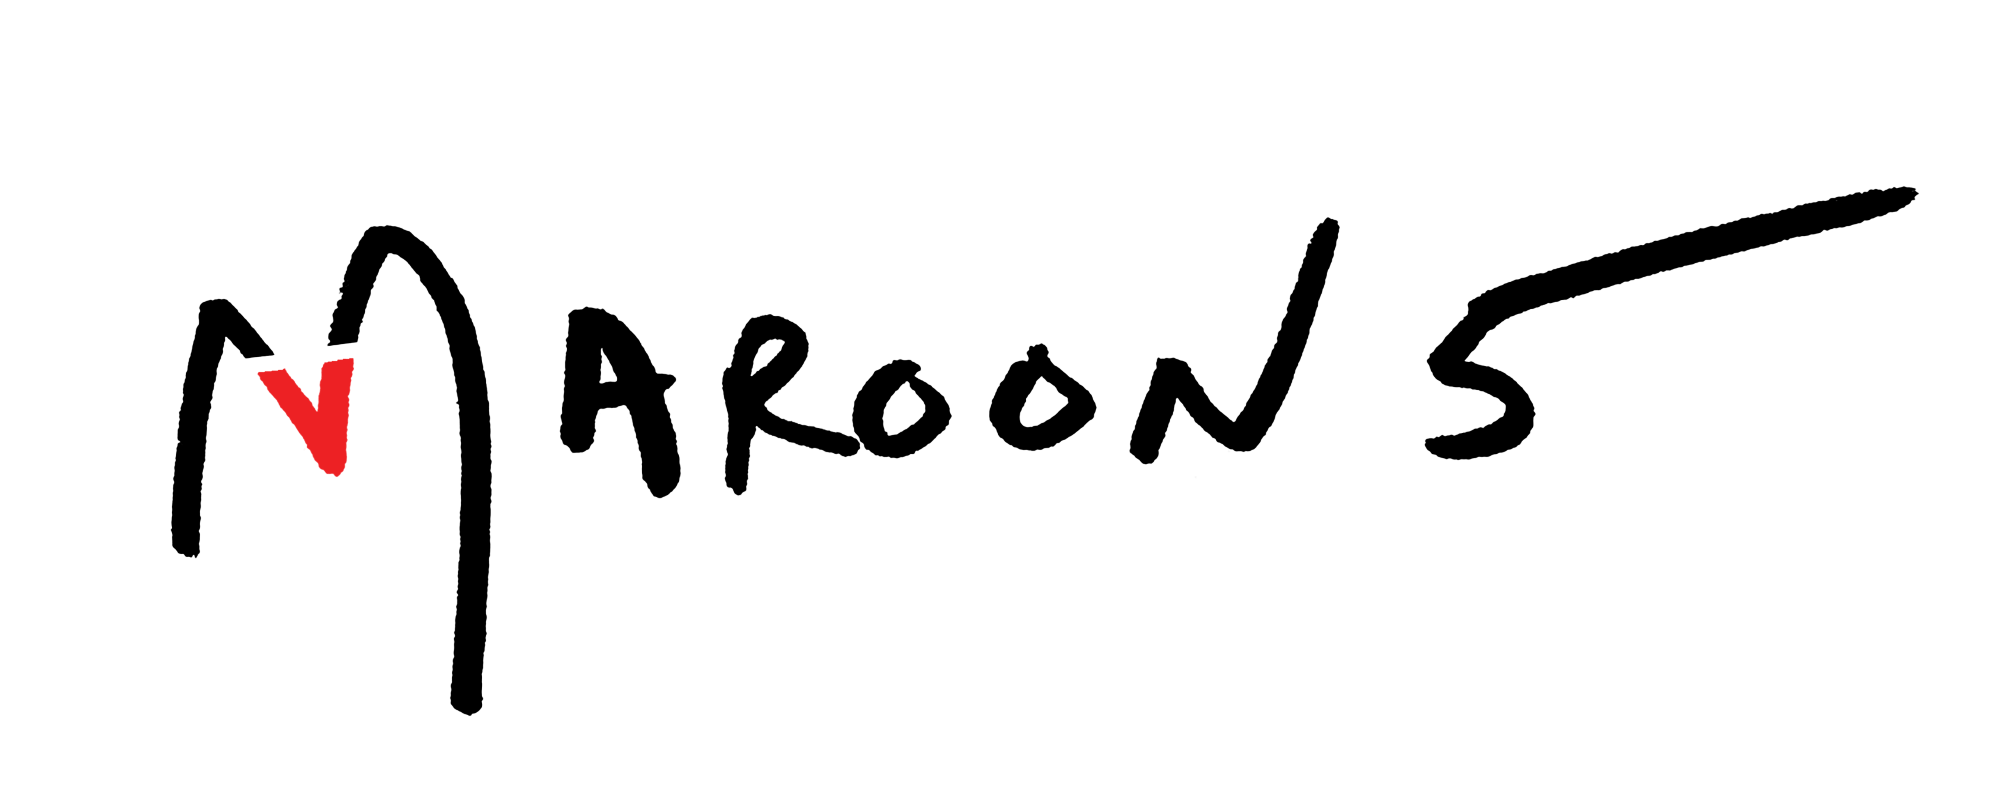 Maroon 5 ロゴの画像